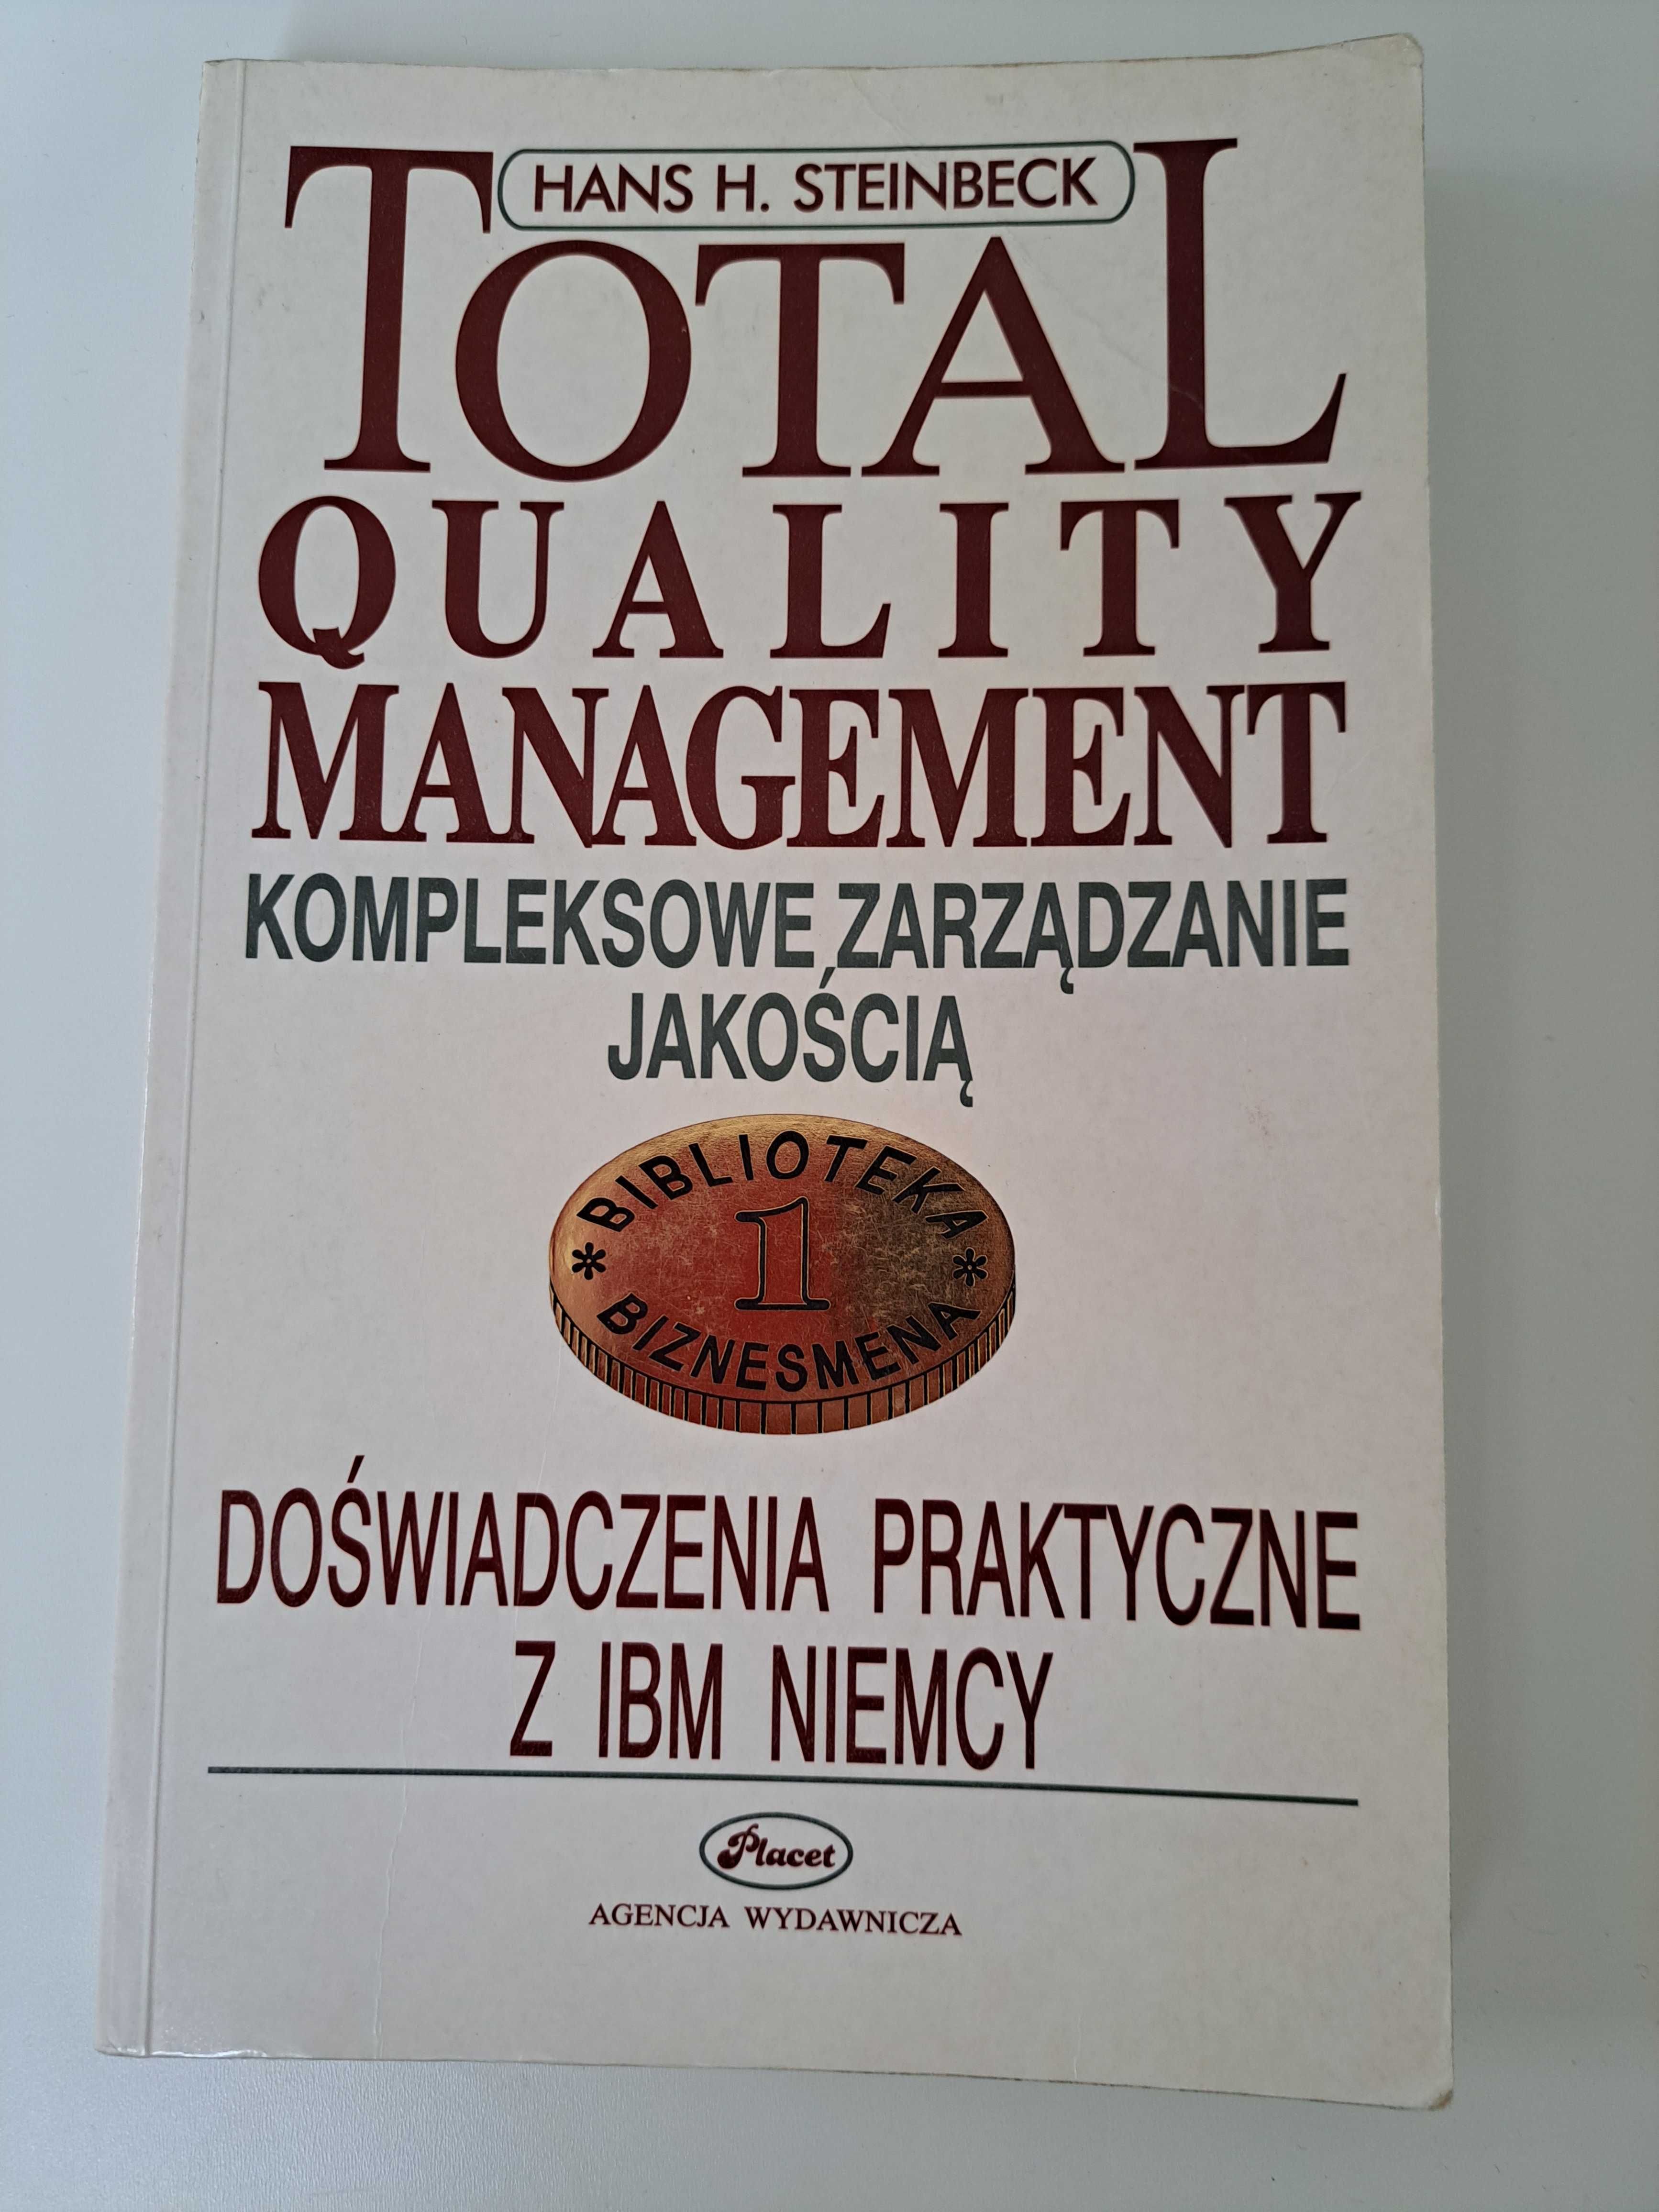 Total quality management - kompleksowe zarządzanie jakością